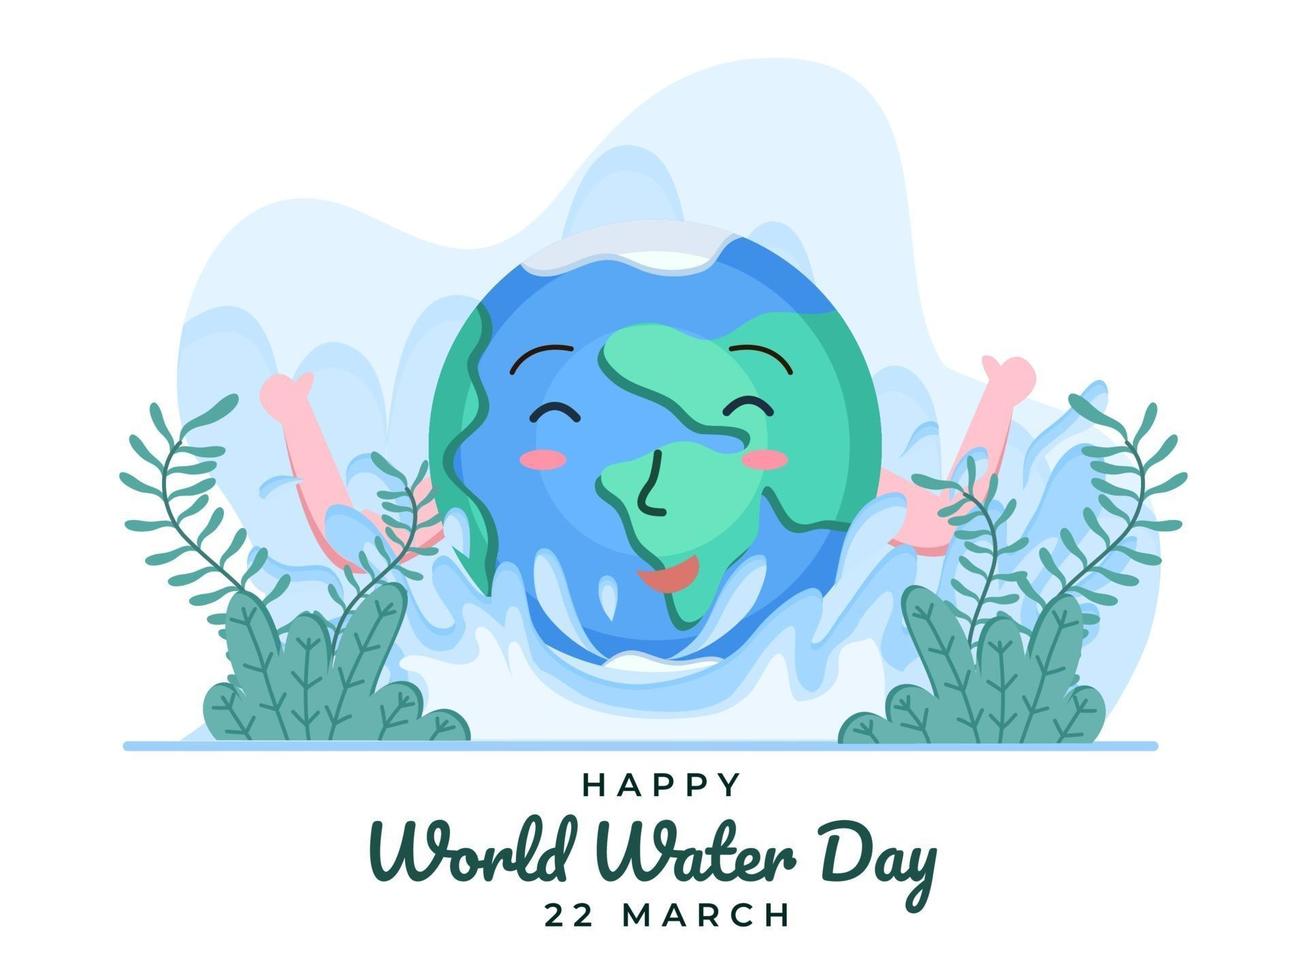 feliz dia mundial da água em 22 de março com ilustração dos desenhos animados da terra fofa. comemorar o dia internacional da água. pode ser usado para banner, cartaz, cartão postal, folheto, site, cartão postal. vetor